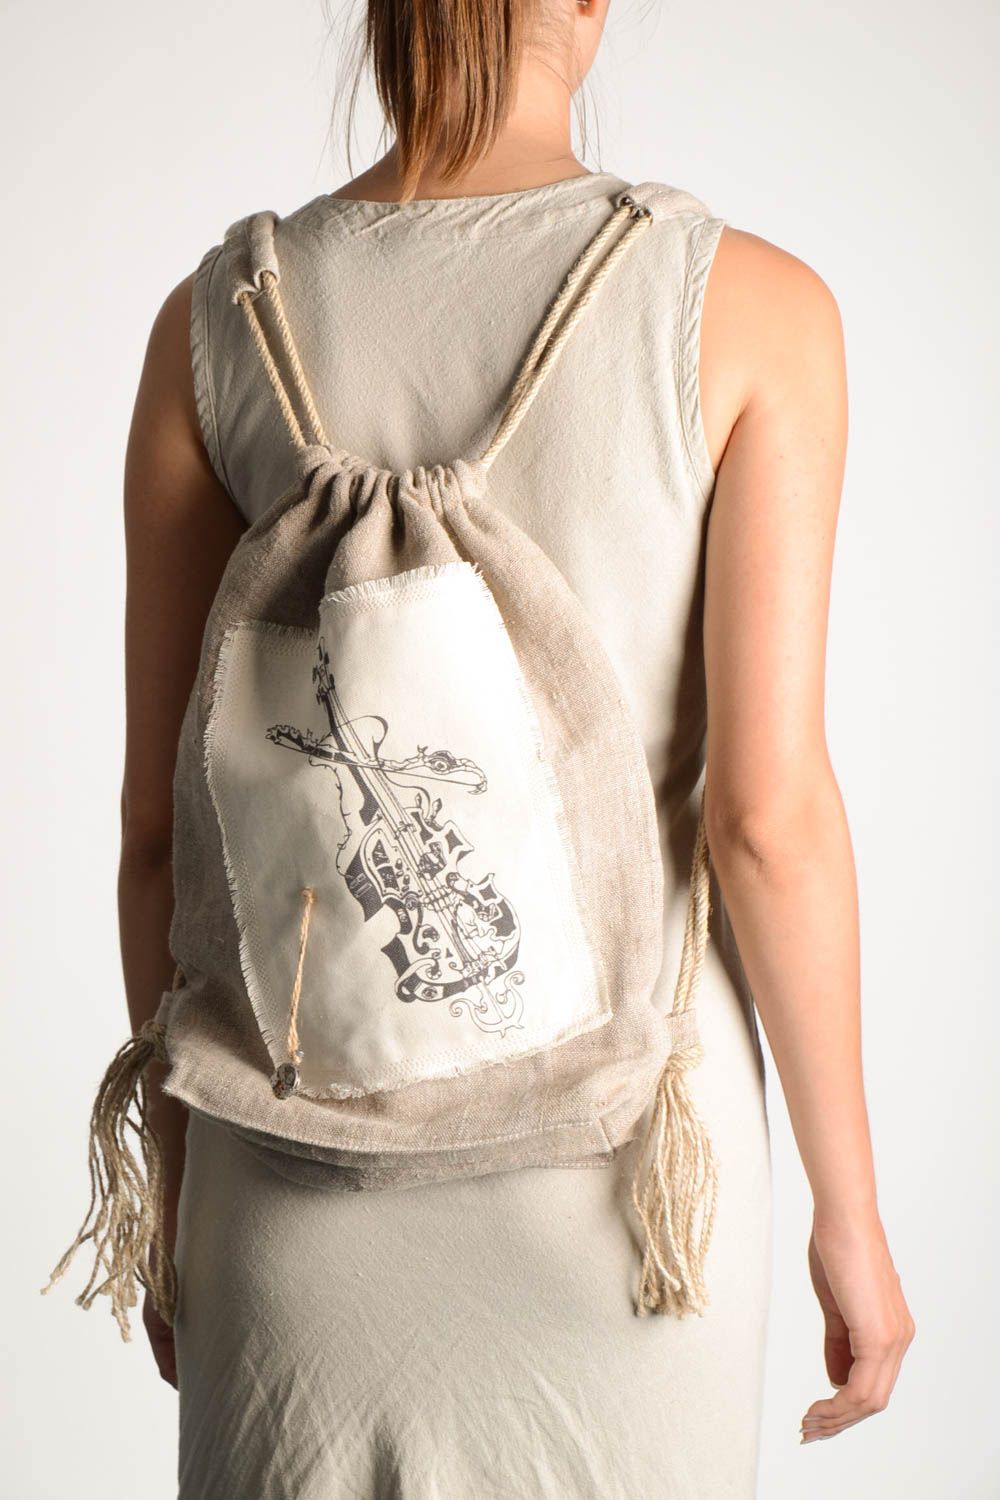 Сумка ручной работы текстильный рюкзак большая сумка авторская стильная фото 1